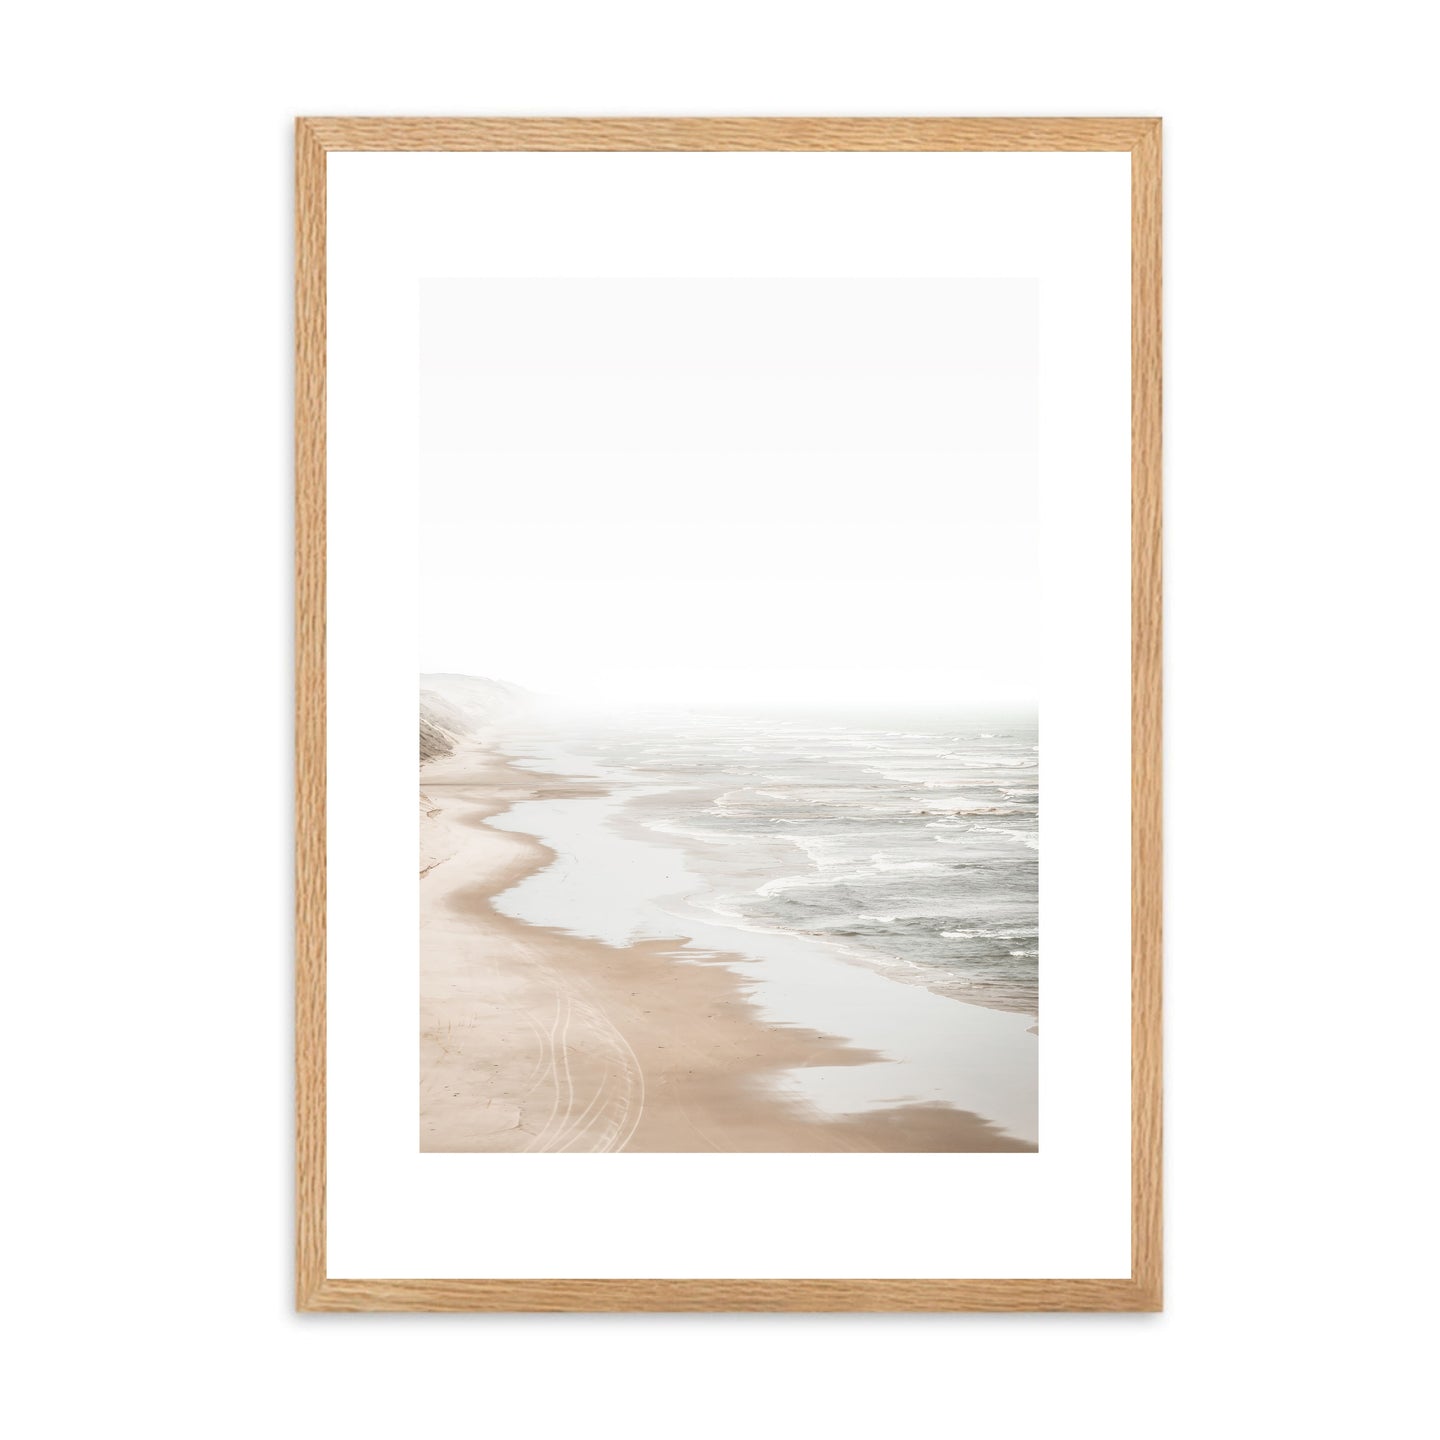 Coastal Beach II | Framed Print